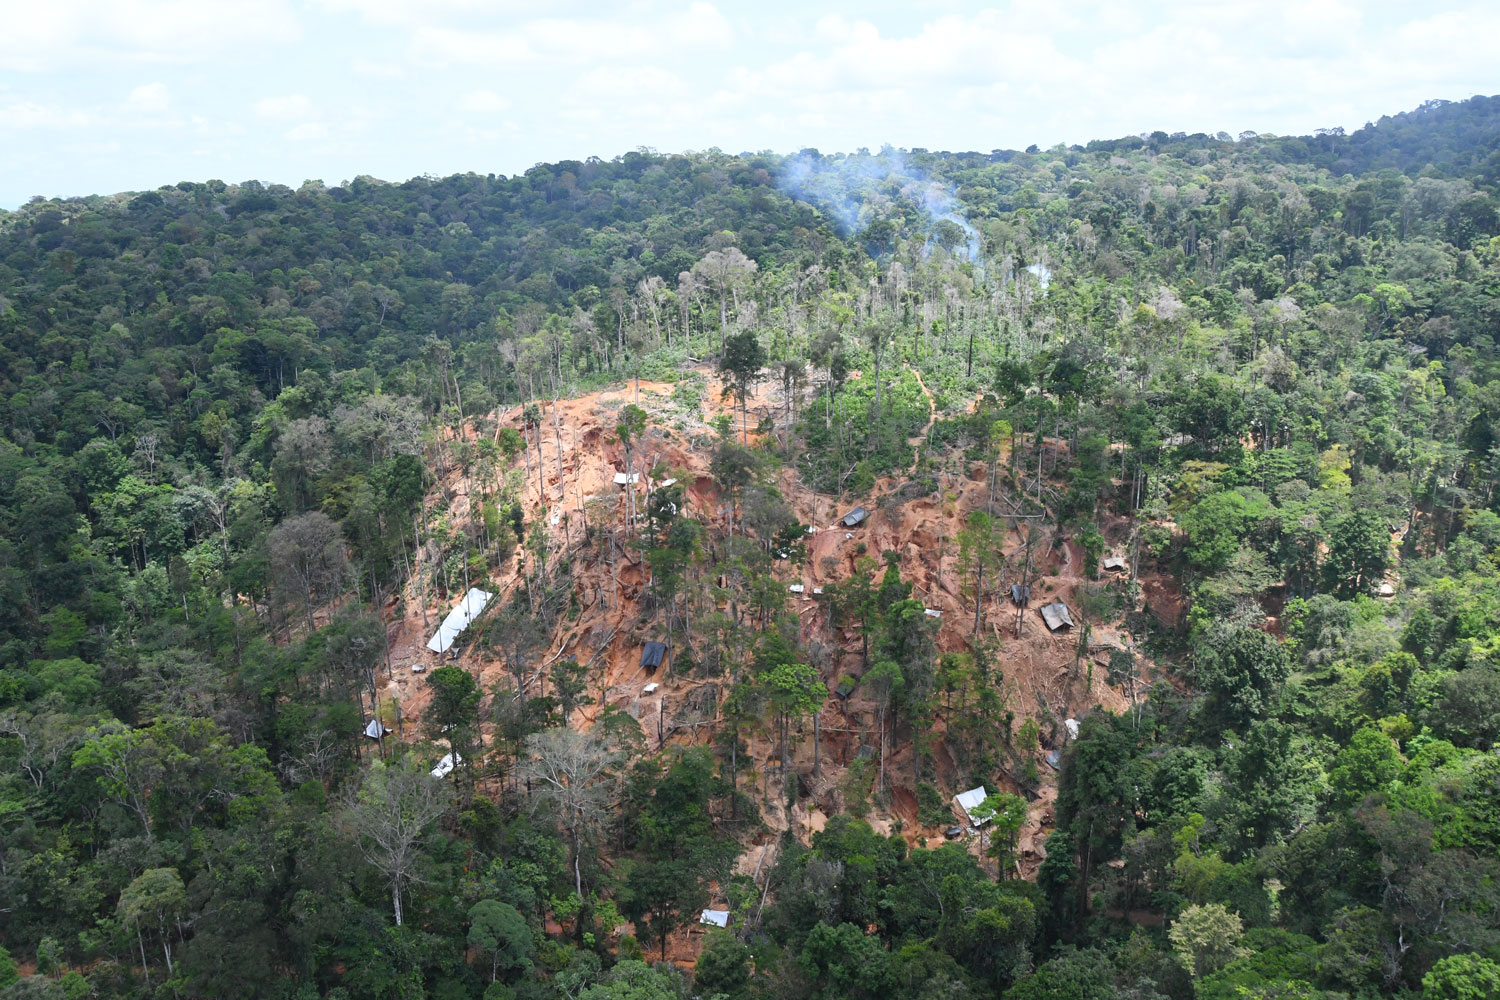 Vue d’ensemble d’un site d’orpaillage clandestin – crédit Parc amazonien de Guyane